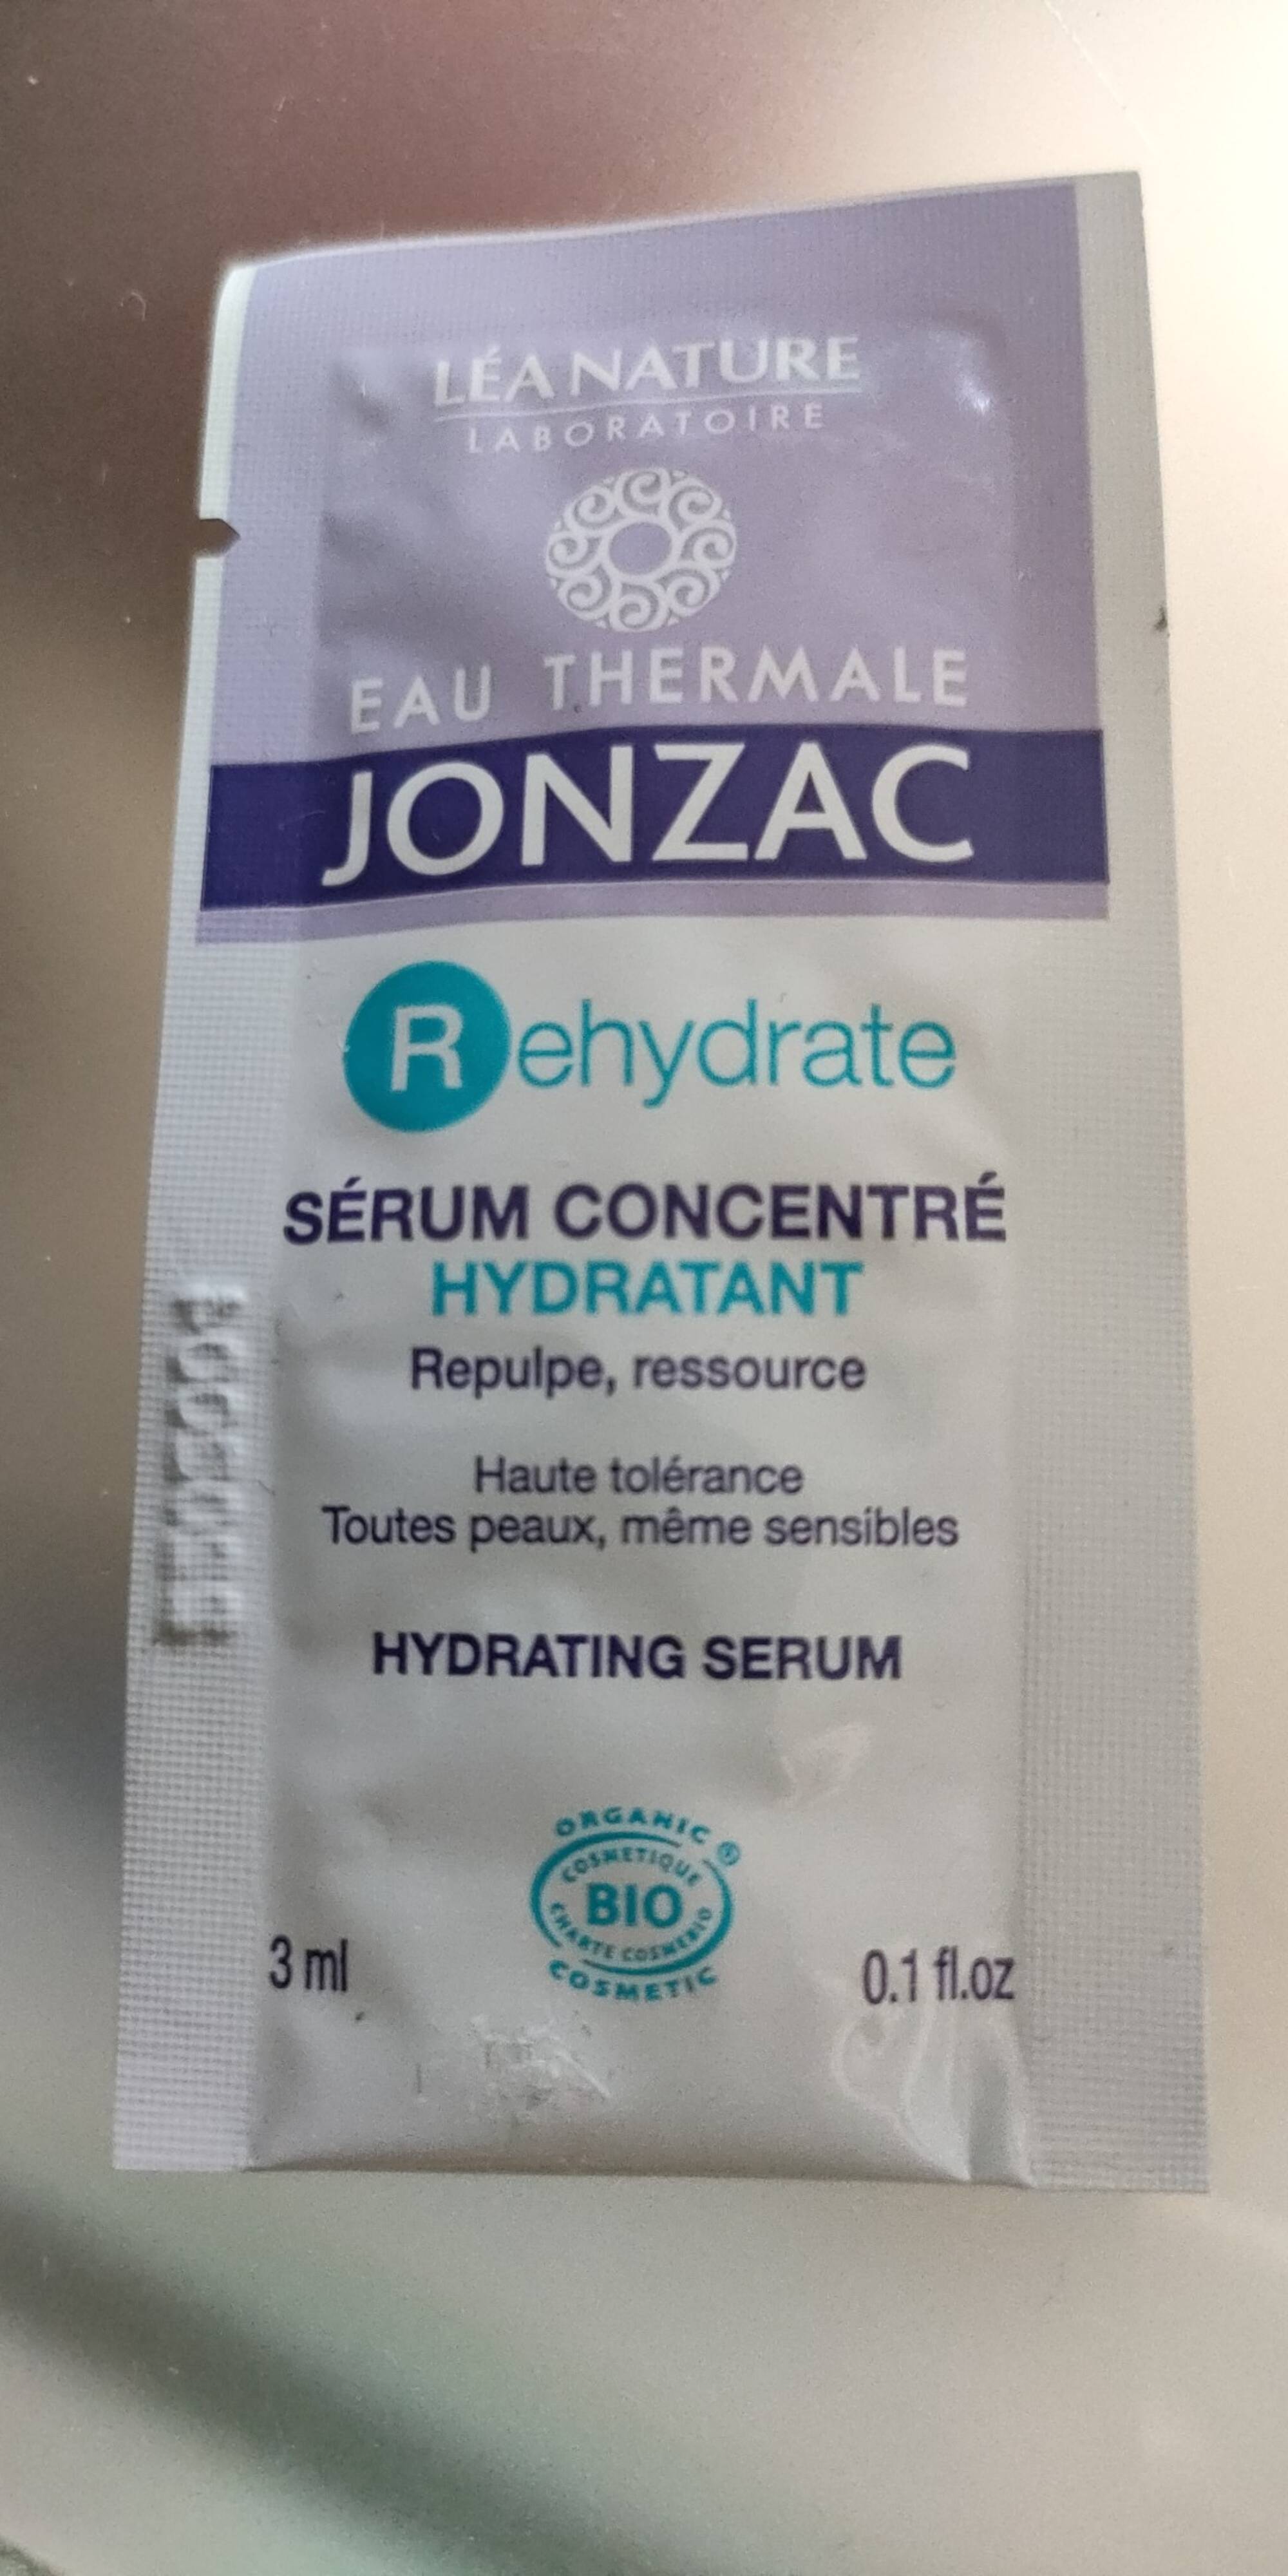 EAU THERMALE JONZAC - Rehydrate - Sérum concentré hydratant